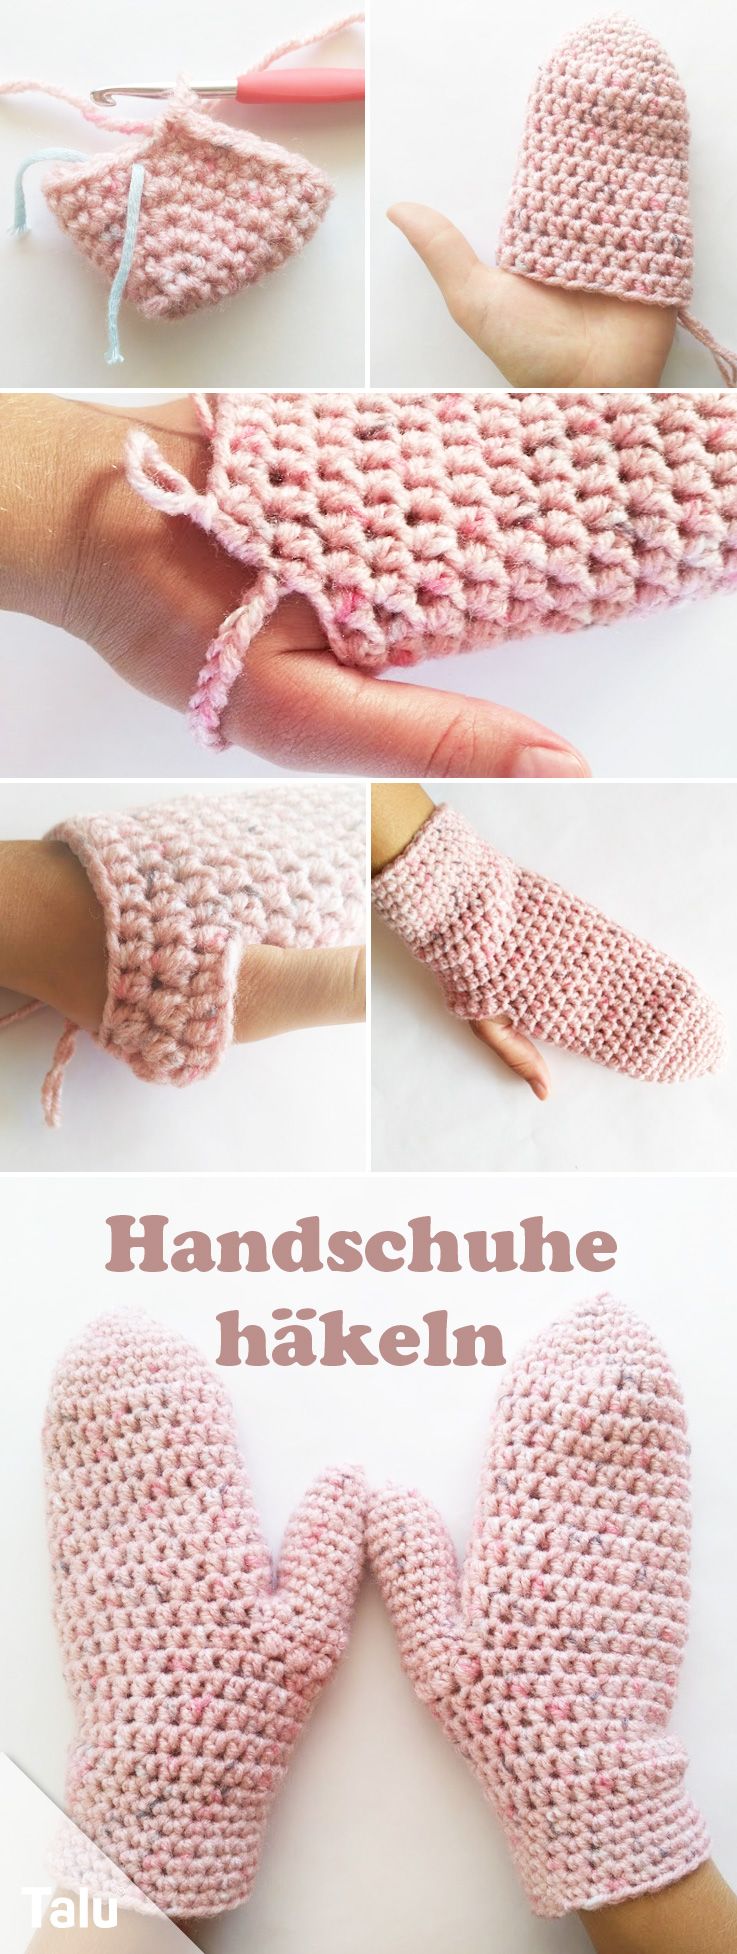 Handschuhe häkeln - Kostenlose Anleitung für warme Fäustlinge